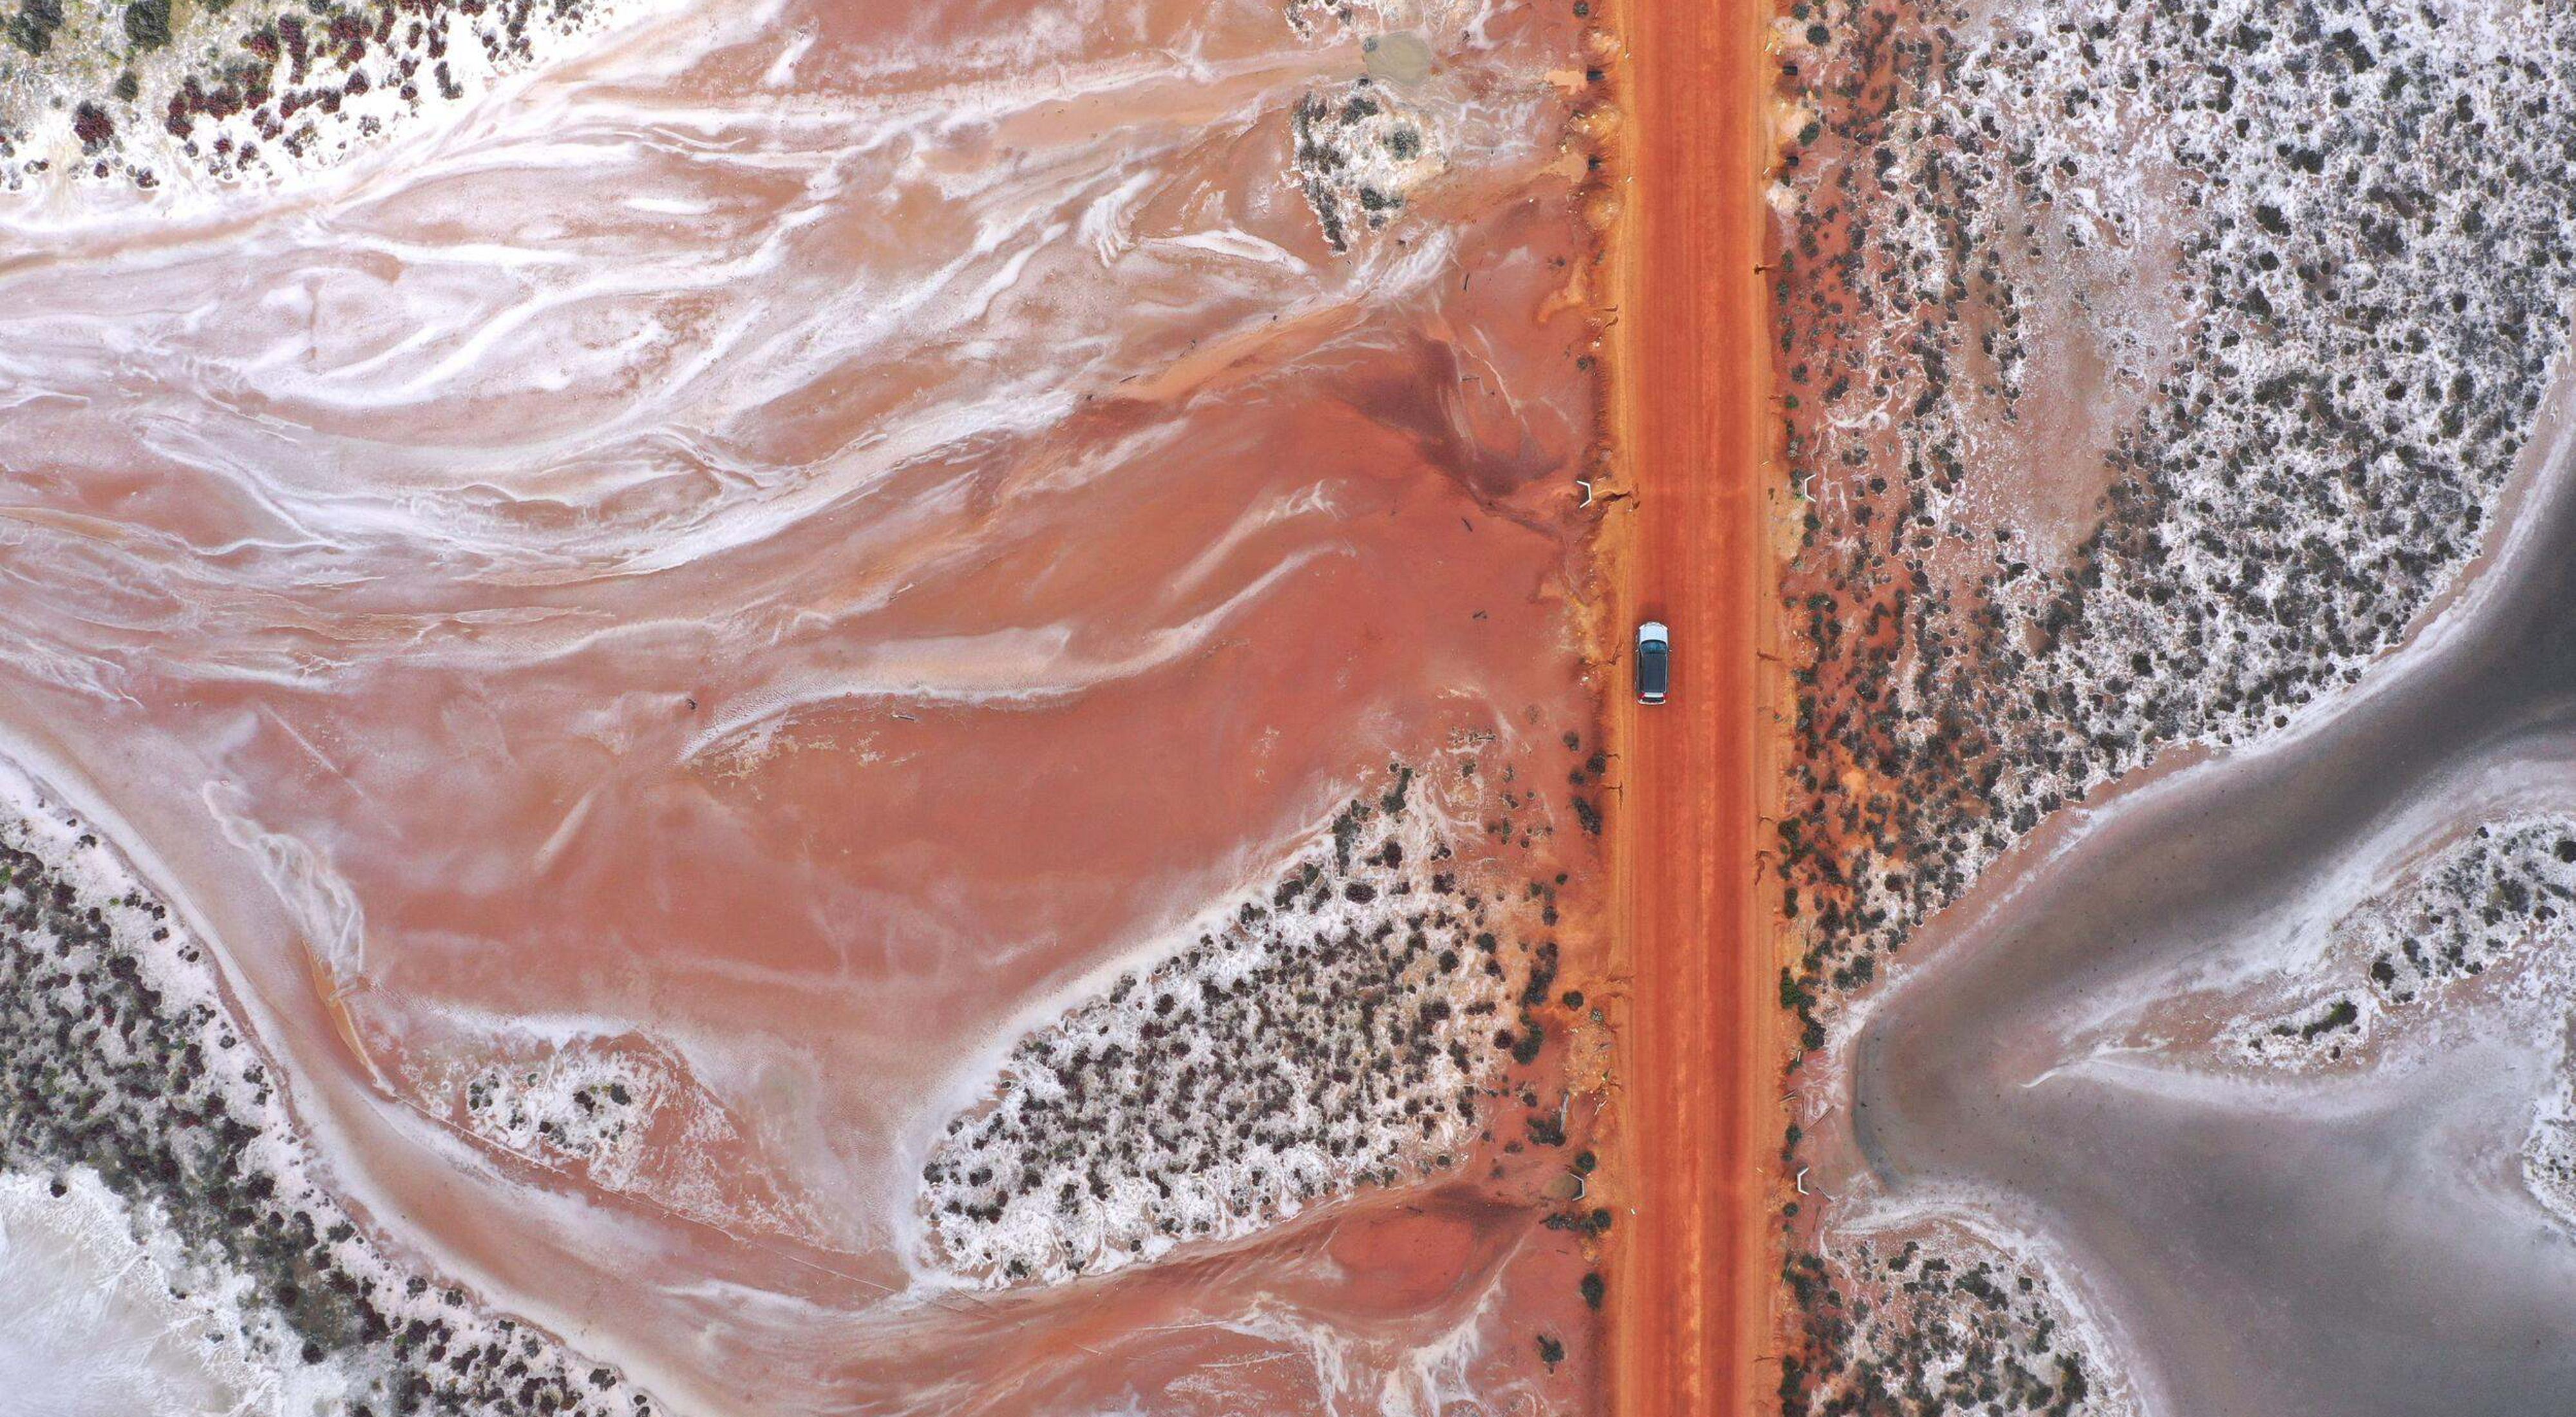 Aerial view looking down at a car driving on a dirt road through desert terrain.